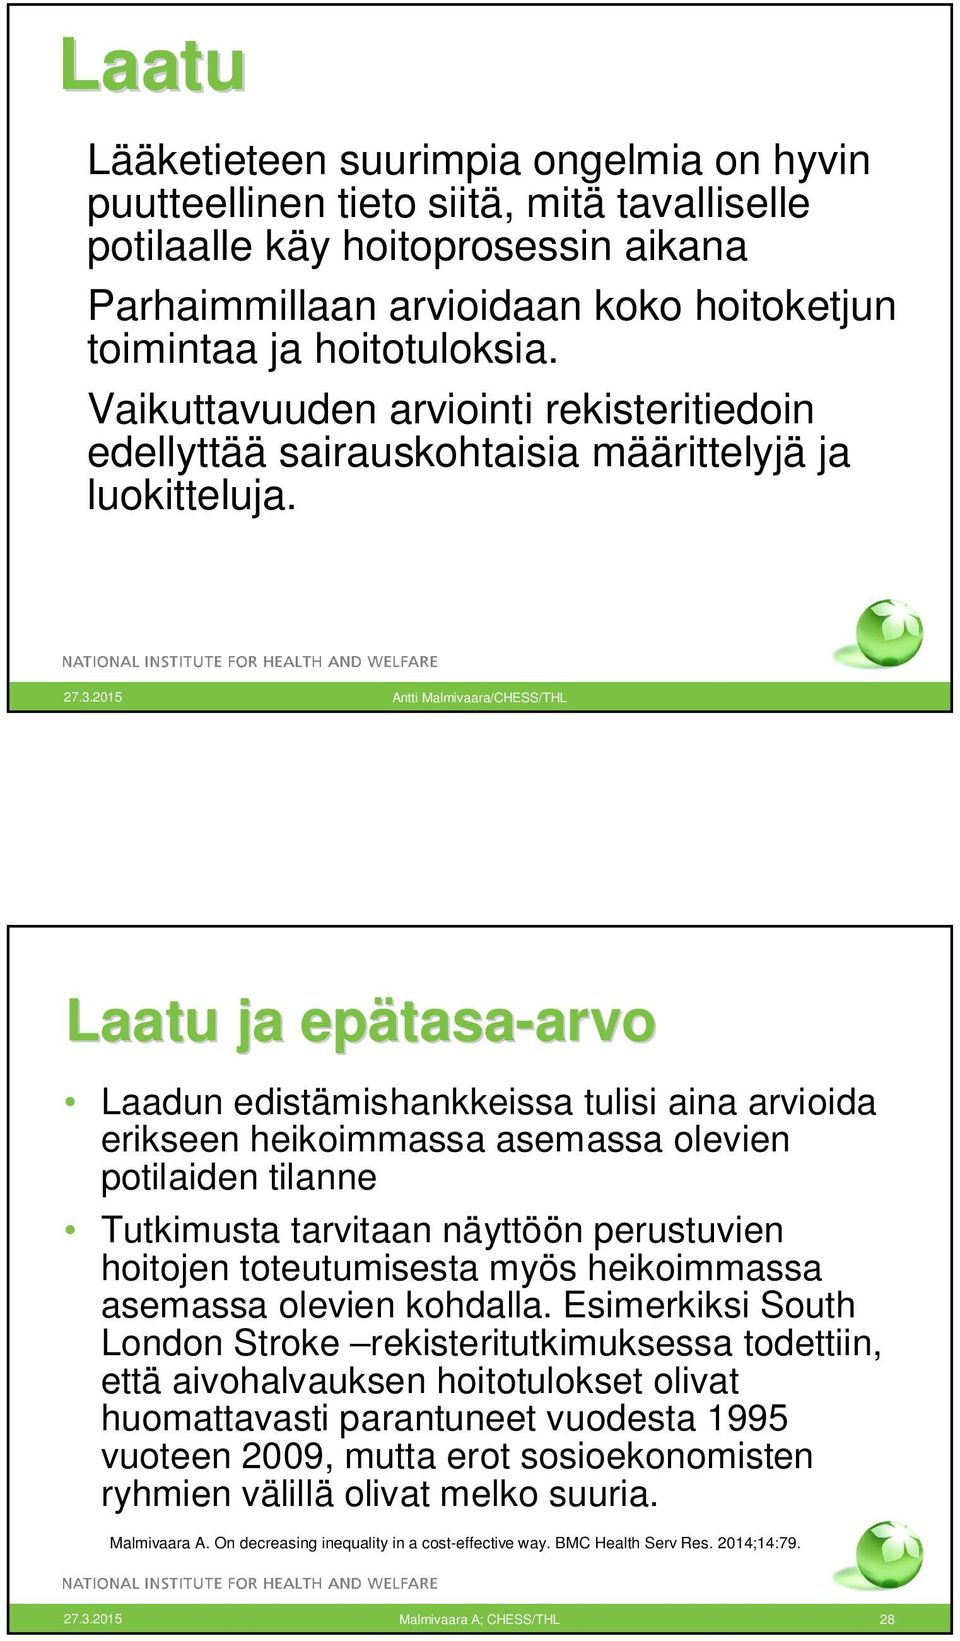 2015 Antti Malmivaara/CHESS/THL Laatu ja epätasa tasa-arvoarvo Laadun edistämishankkeissa tulisi aina arvioida erikseen heikoimmassa asemassa olevien potilaiden tilanne Tutkimusta tarvitaan näyttöön